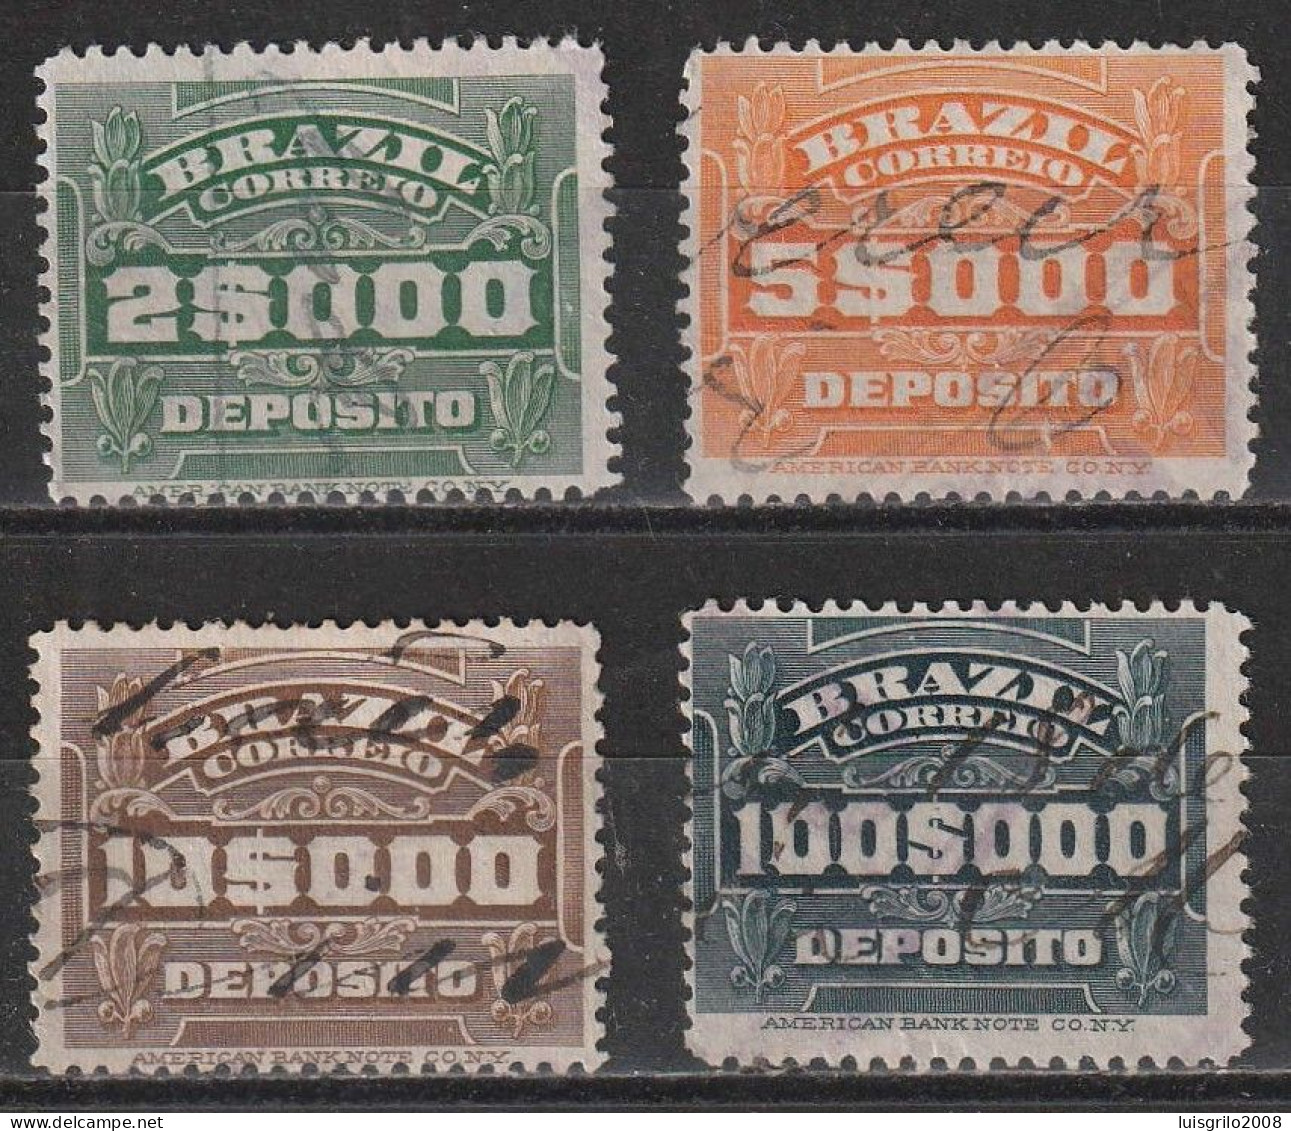 Revenue/ Fiscaux, Brazil 1920 - Depósito, Receita Fiscal -|- 2$000, 5$000, 10$000, 100$000 - Servizio